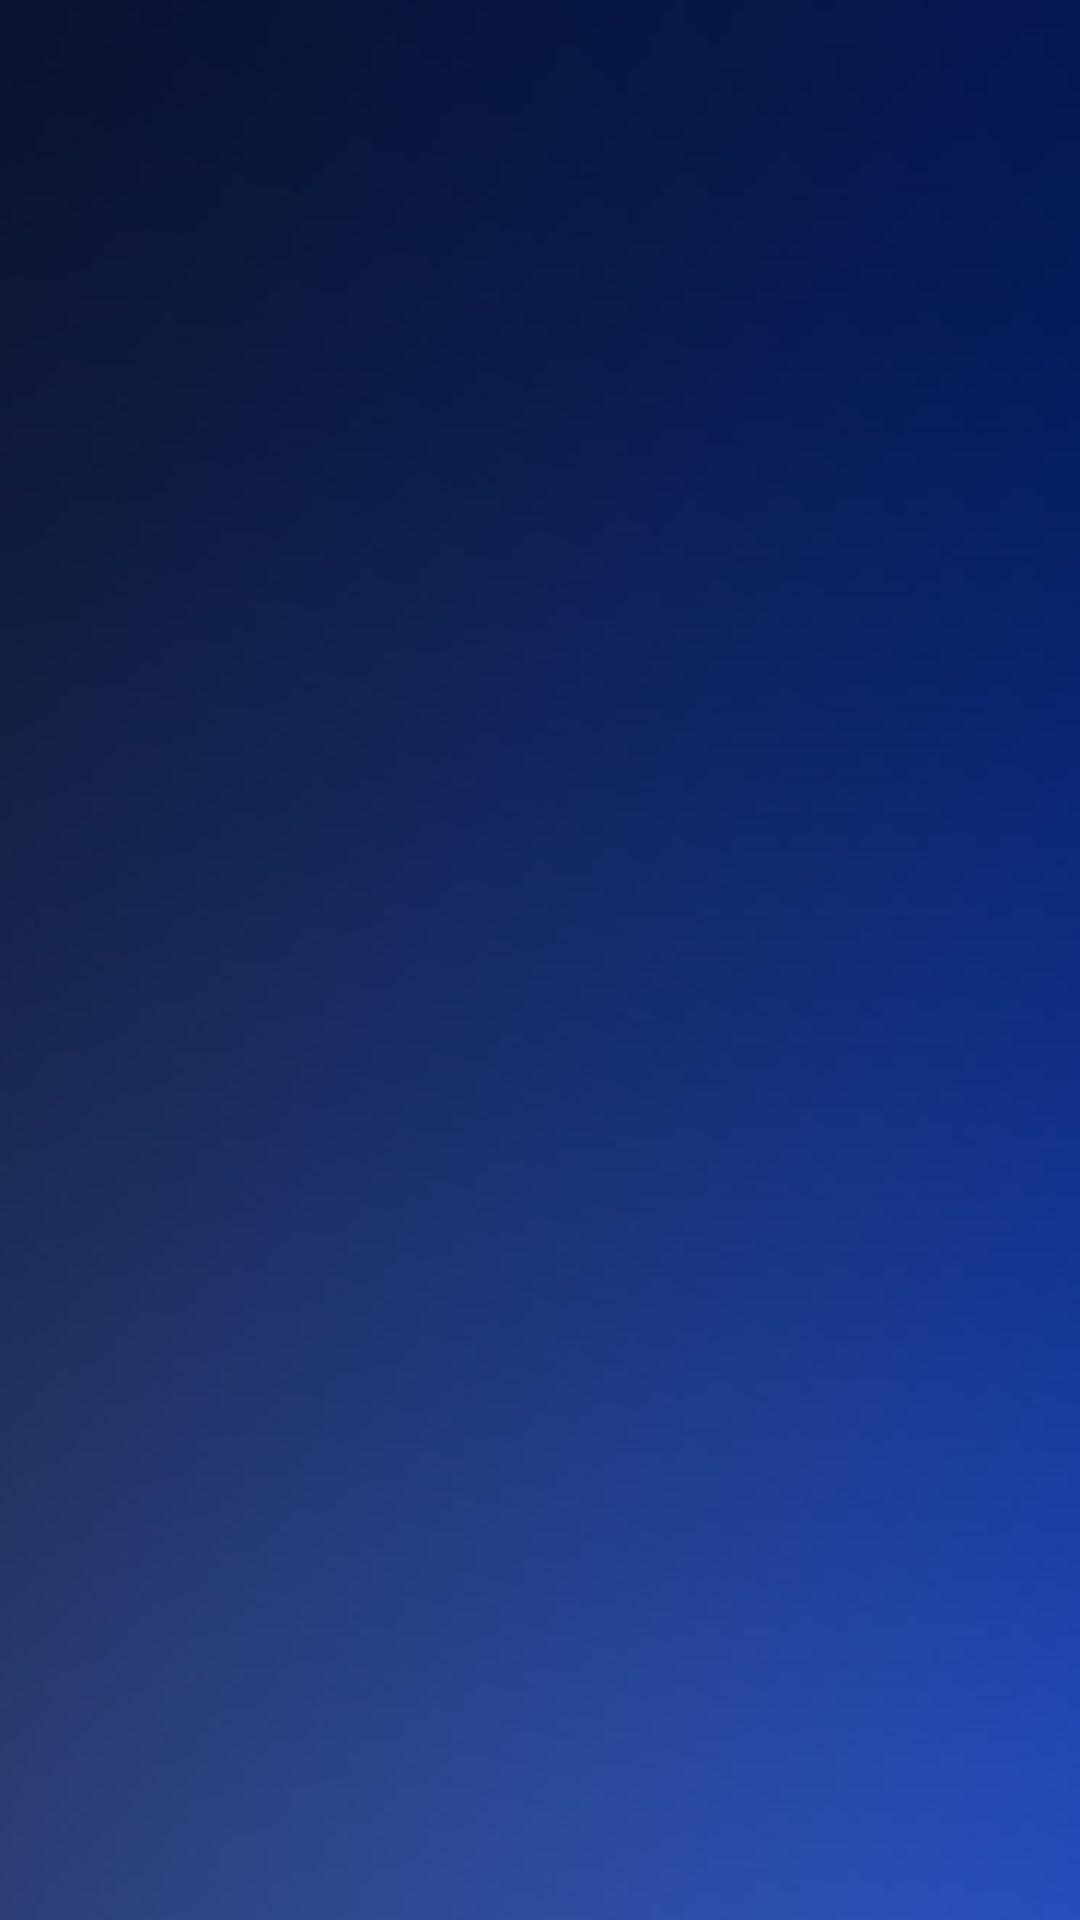 Pure Dark Blue Ocean Gradation Blur Background iPhone 6 wallpaper